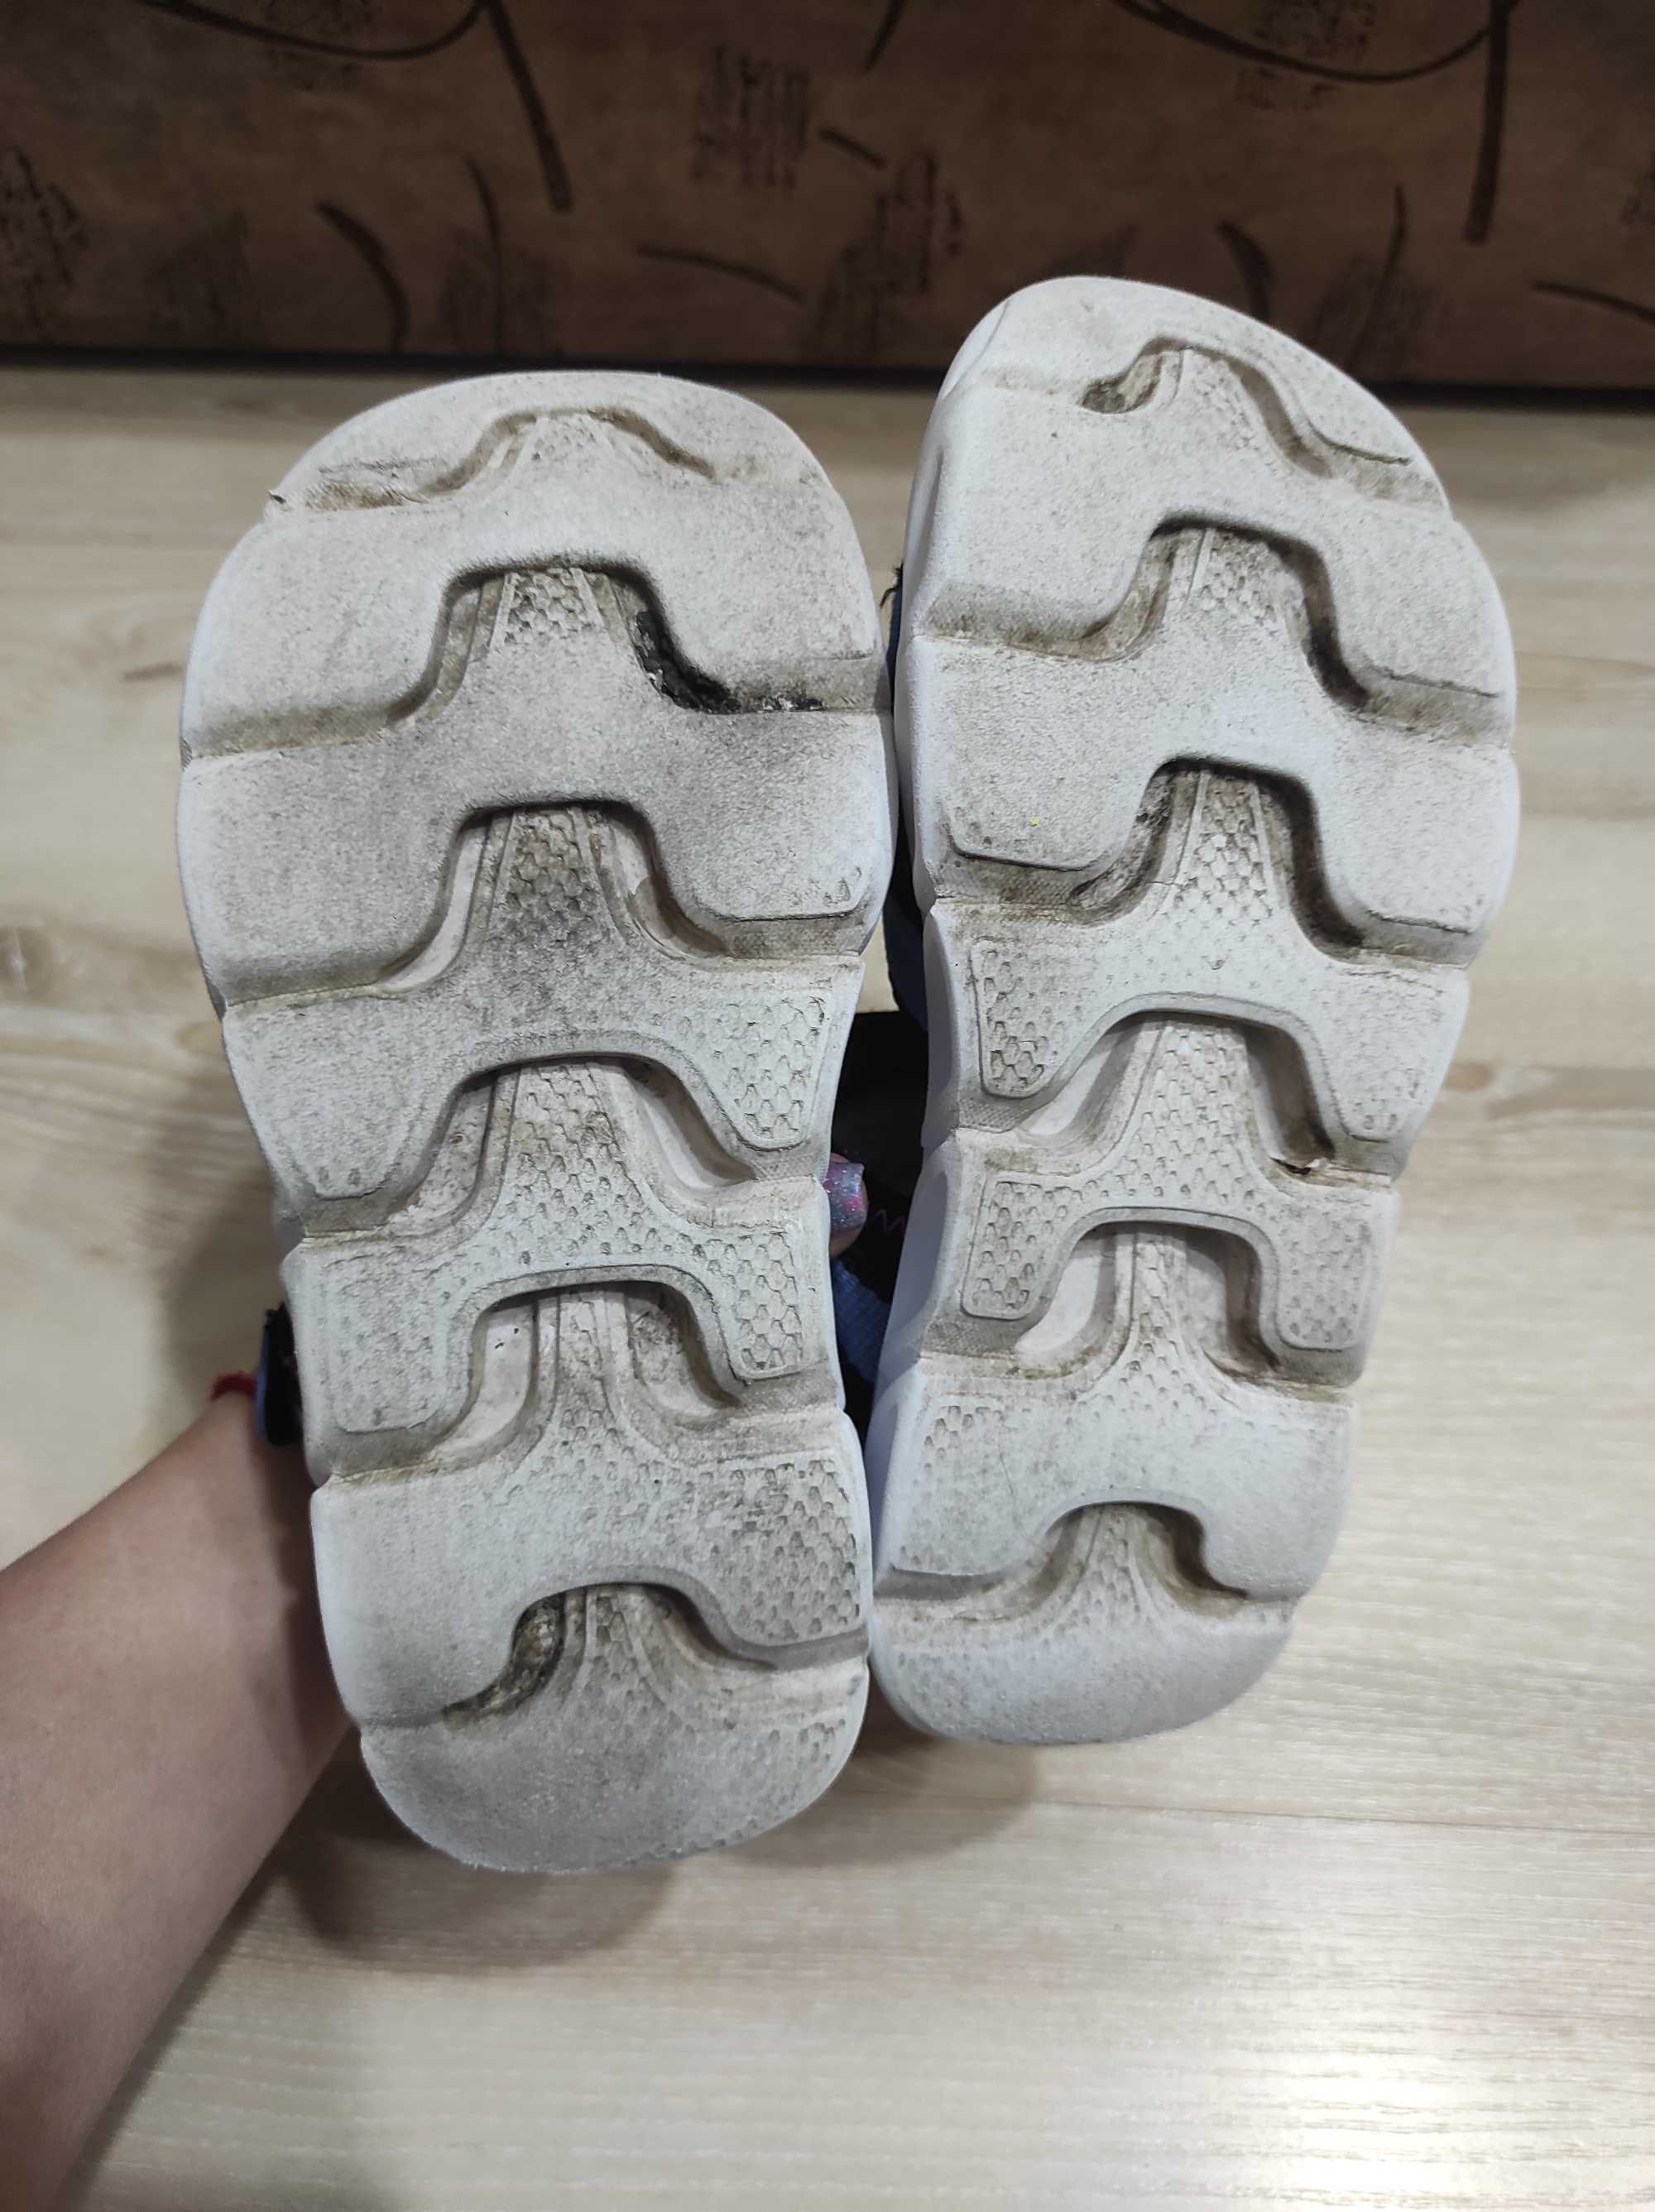 Светящиеся текстильные сандалии босоножки Skechers на 19,5-20 см